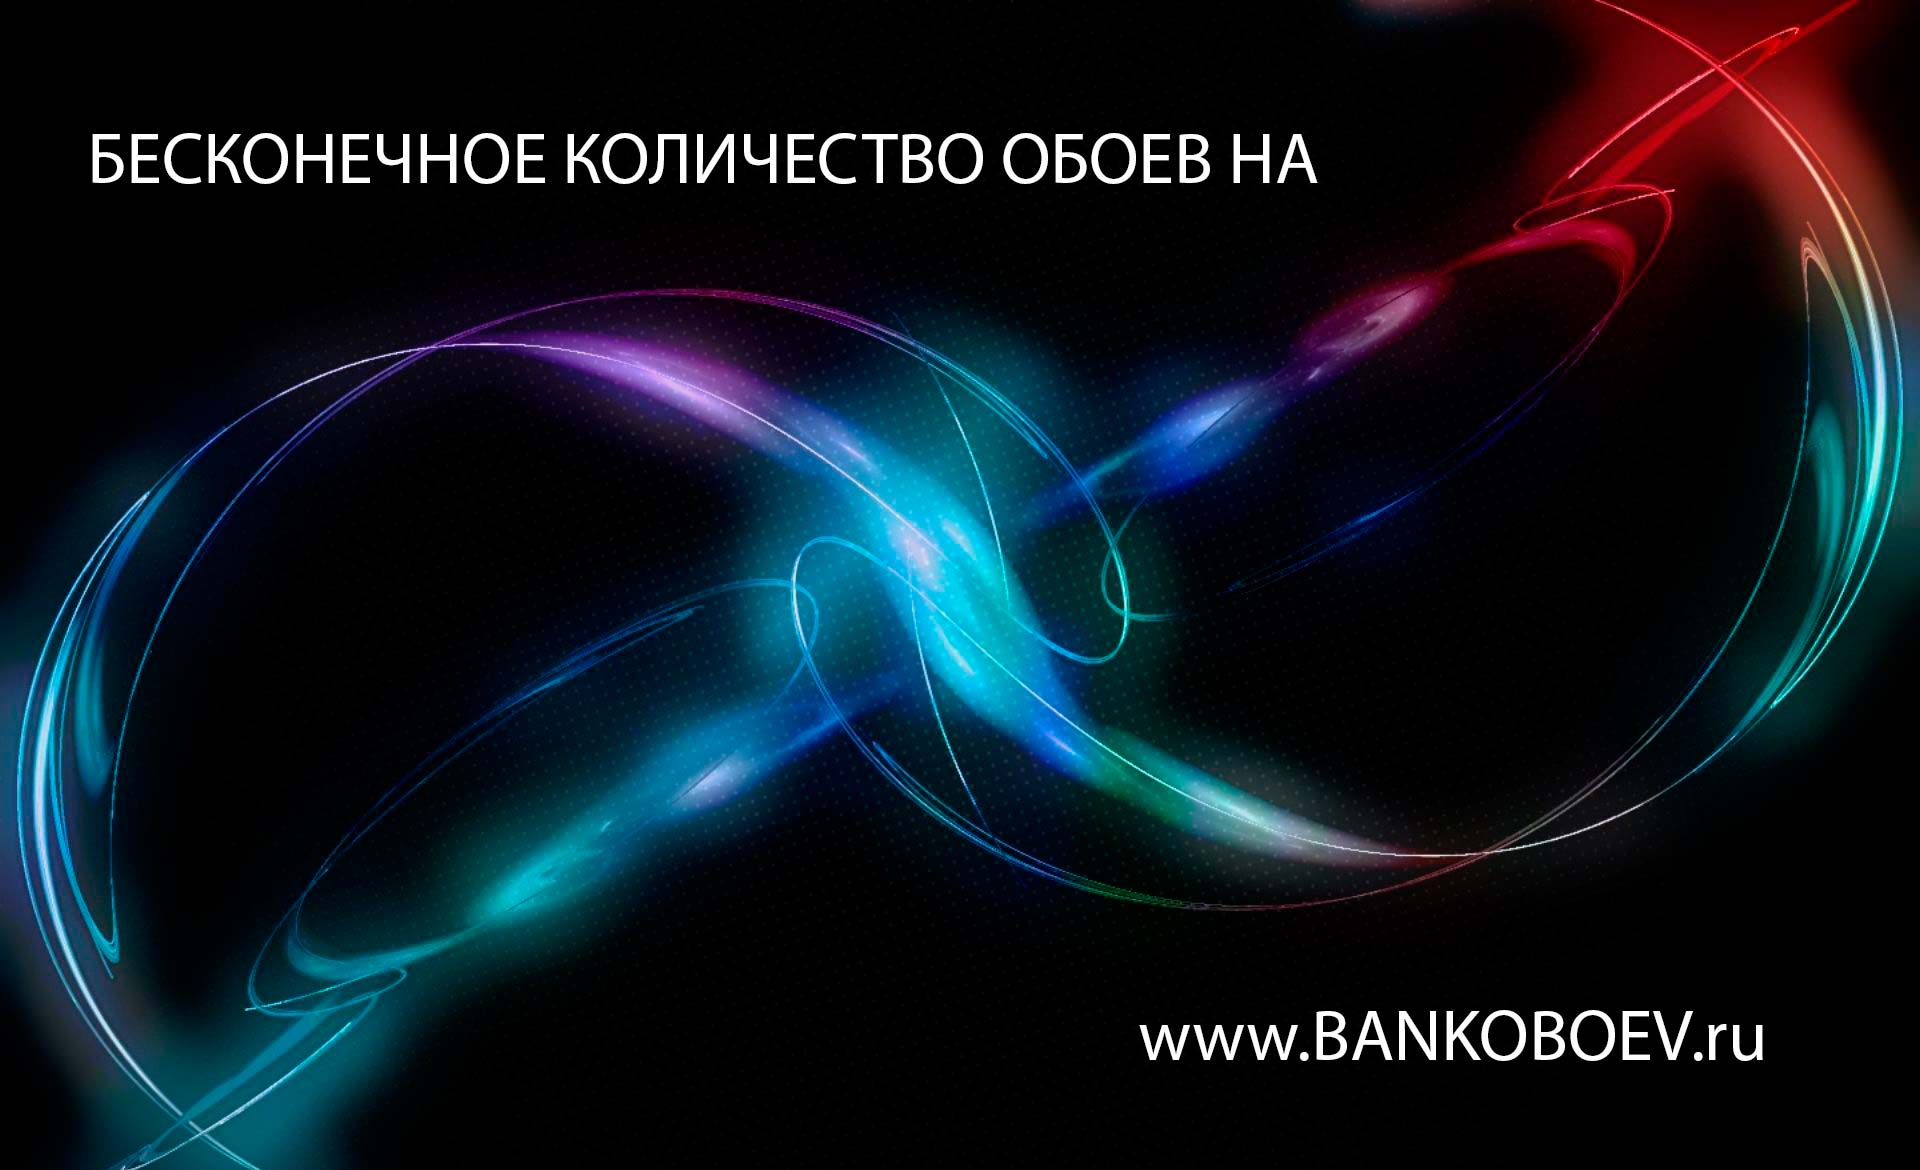 Luminous Desktop Bankoboev Image Full HD Wallpaper